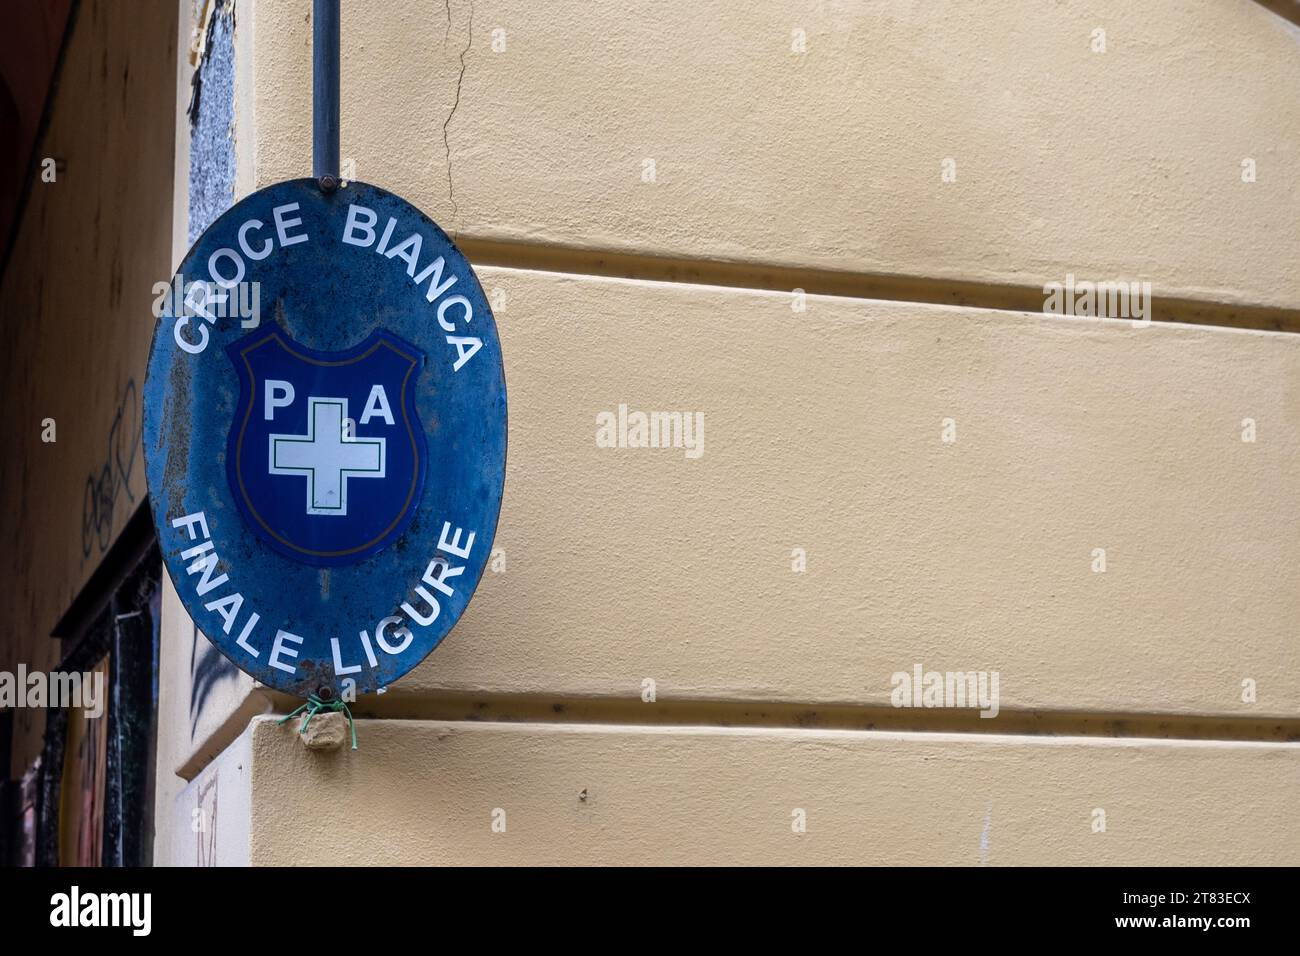 Signe de la P.A. Croce Bianca (Croix Blanche) de finale Ligure, une association à but non lucratif qui opère dans le secteur des premiers secours et du transport des patients Banque D'Images